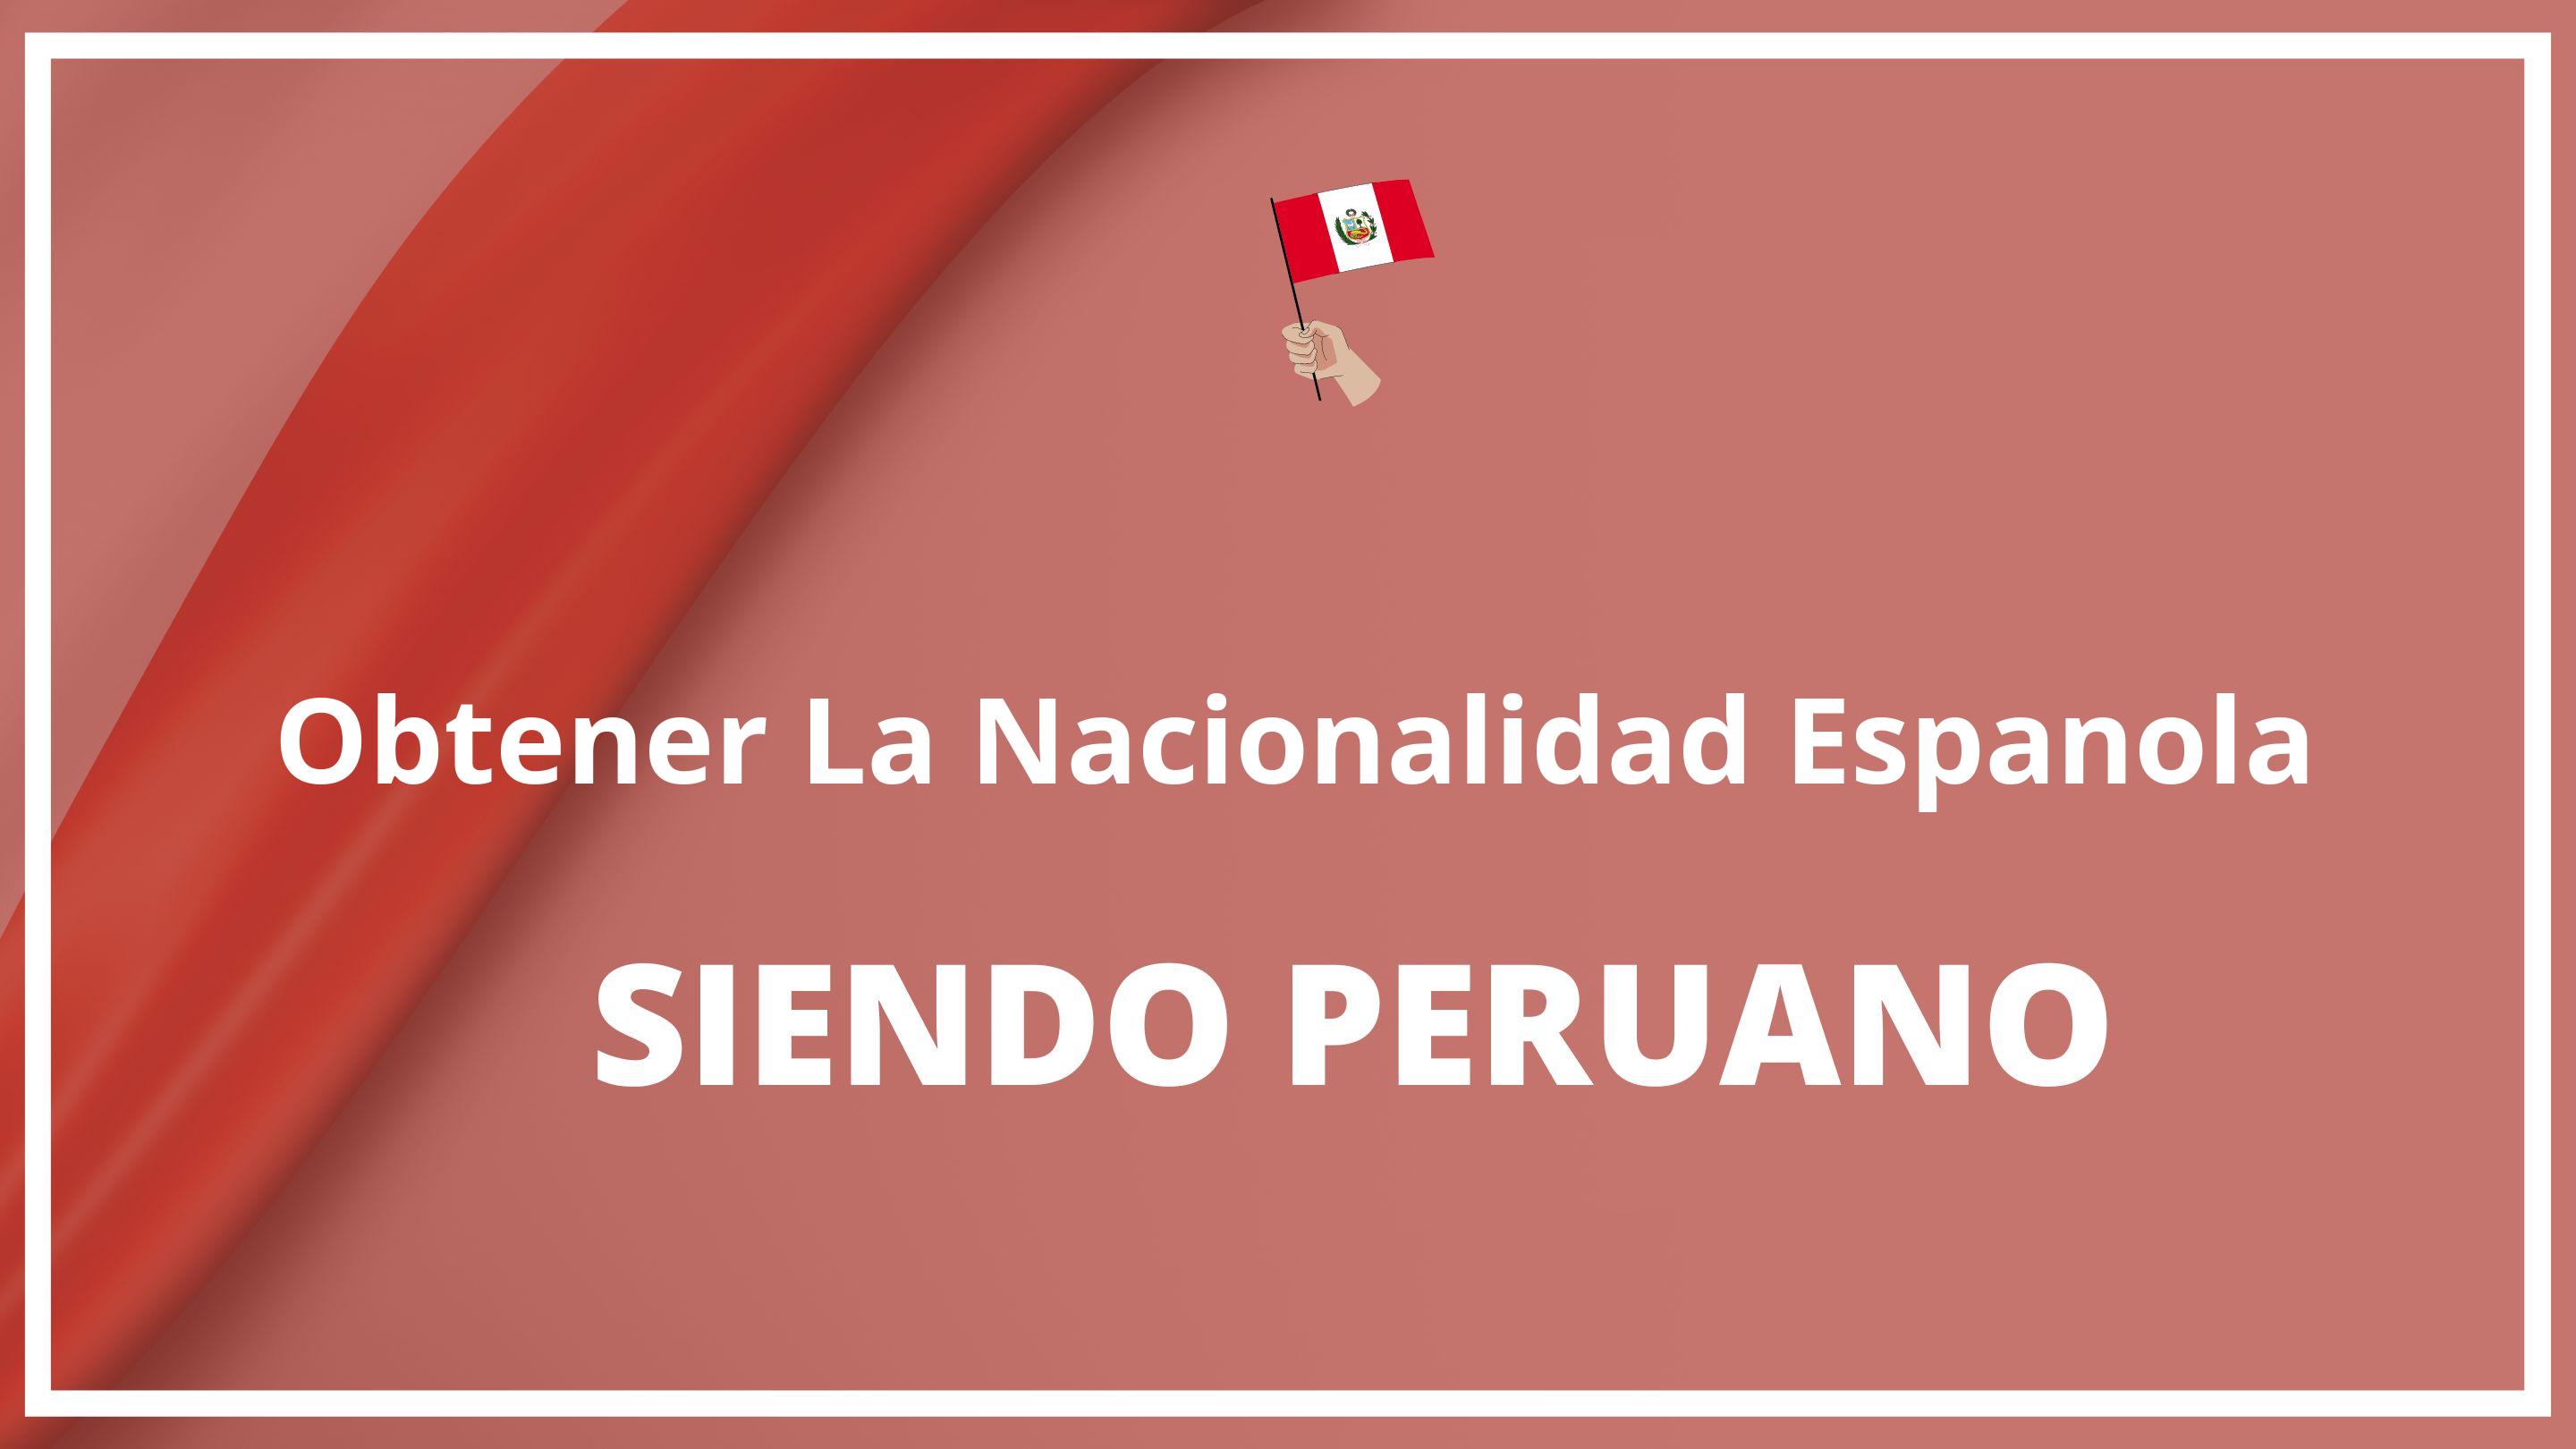 Como obtener la nacionalidad española siendo peruano